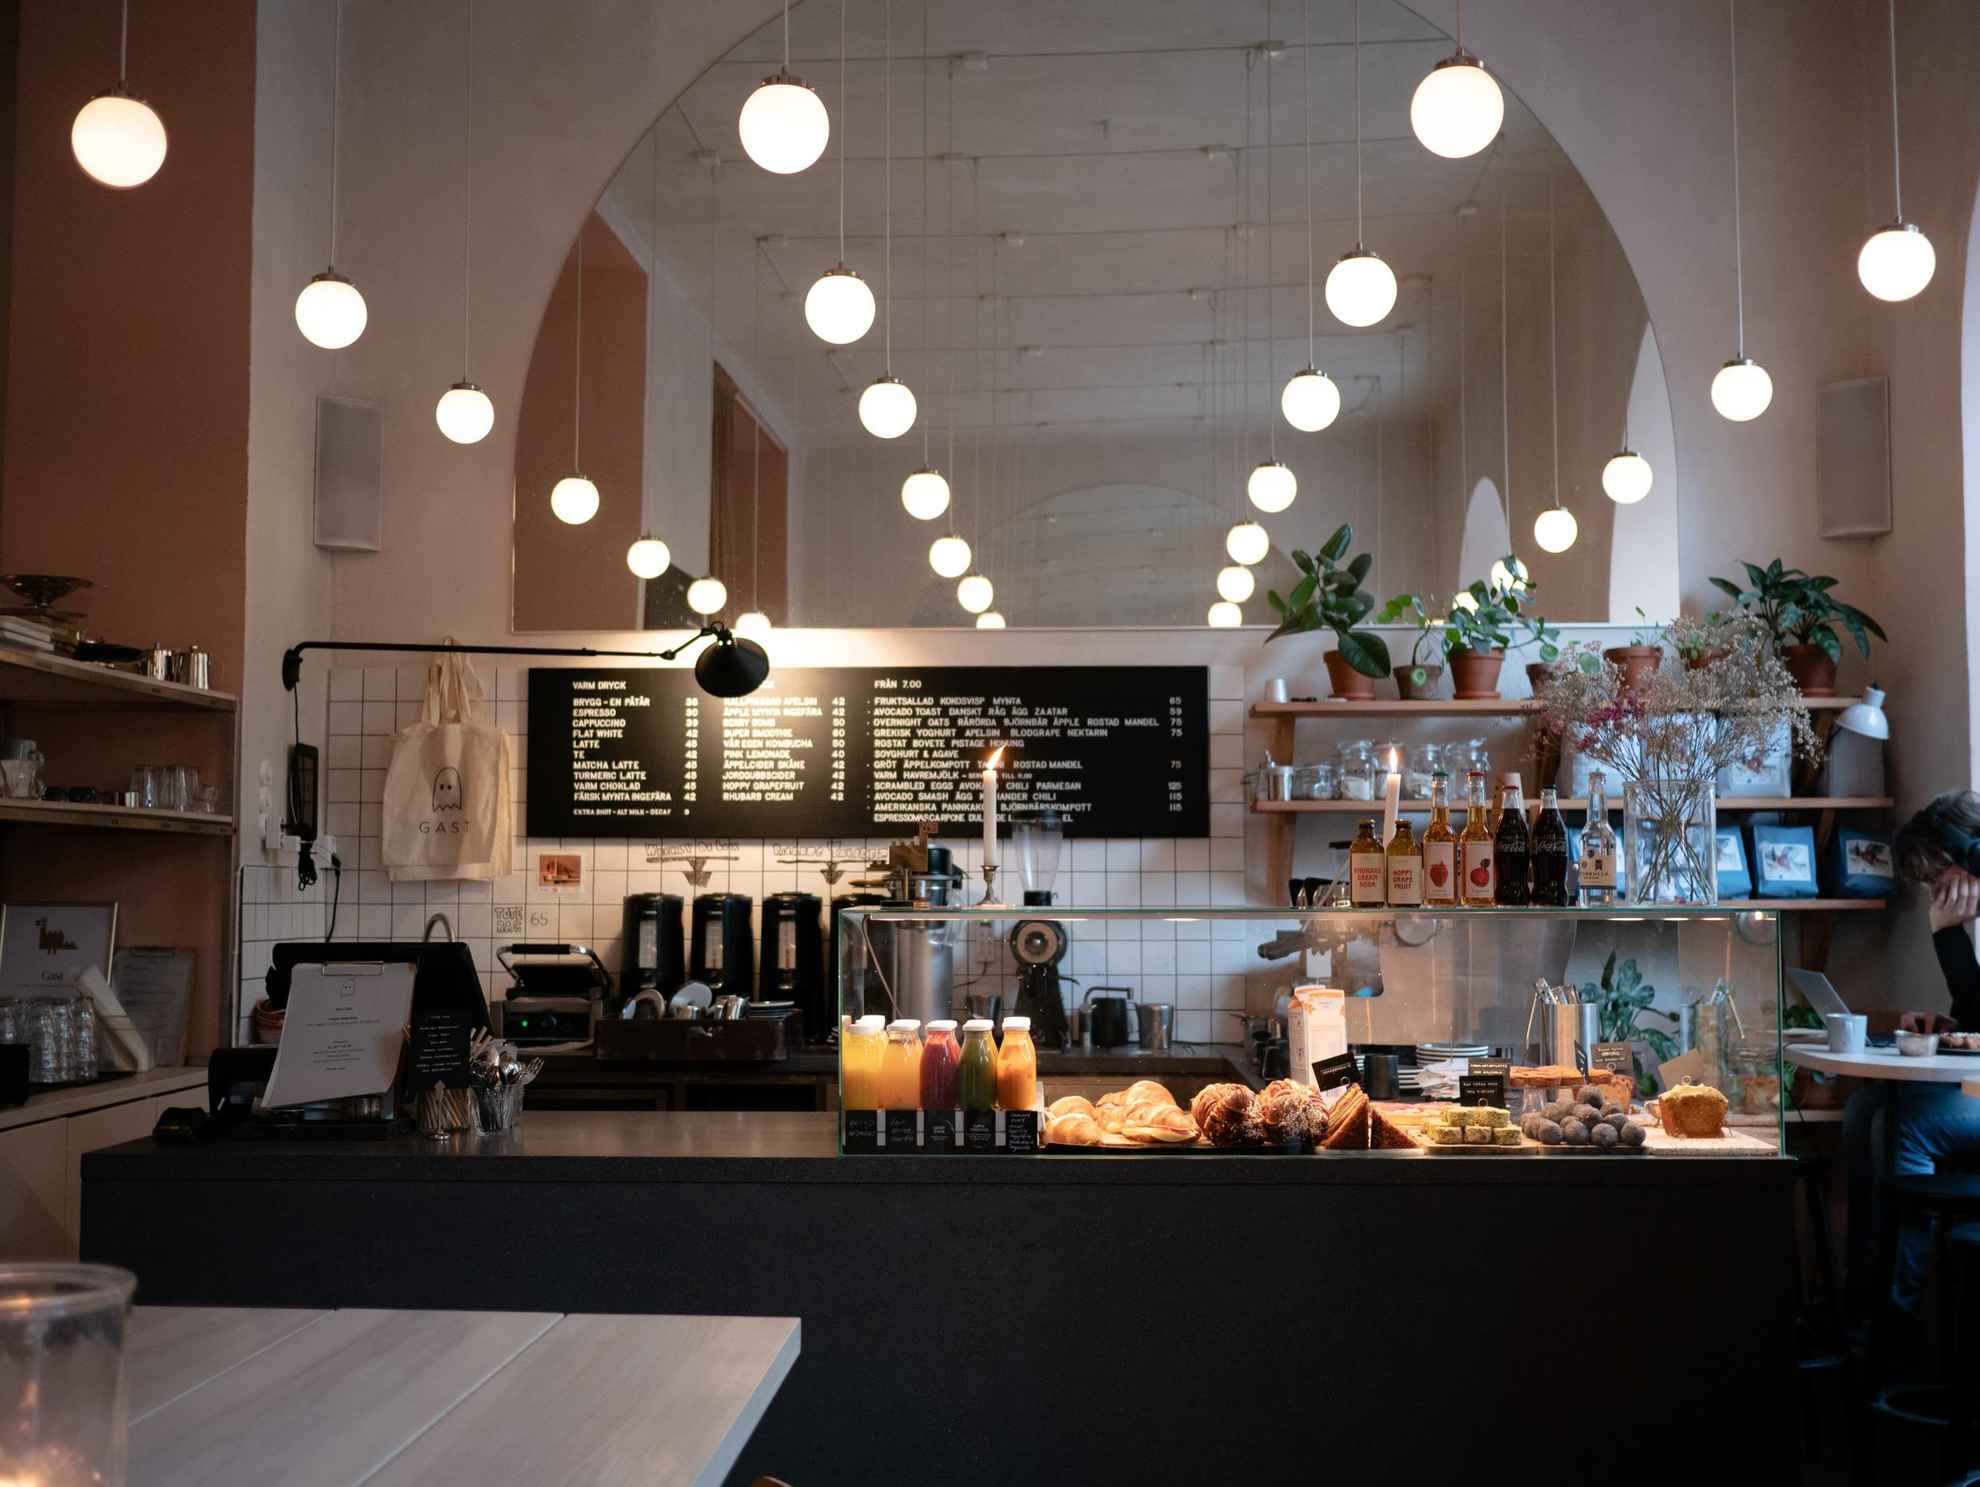 Die Ausgabetheke im Gast Café in Stockholm mit Brötchen, Brot, Gebäck und verschiedenen Erfrischungsgetränken.